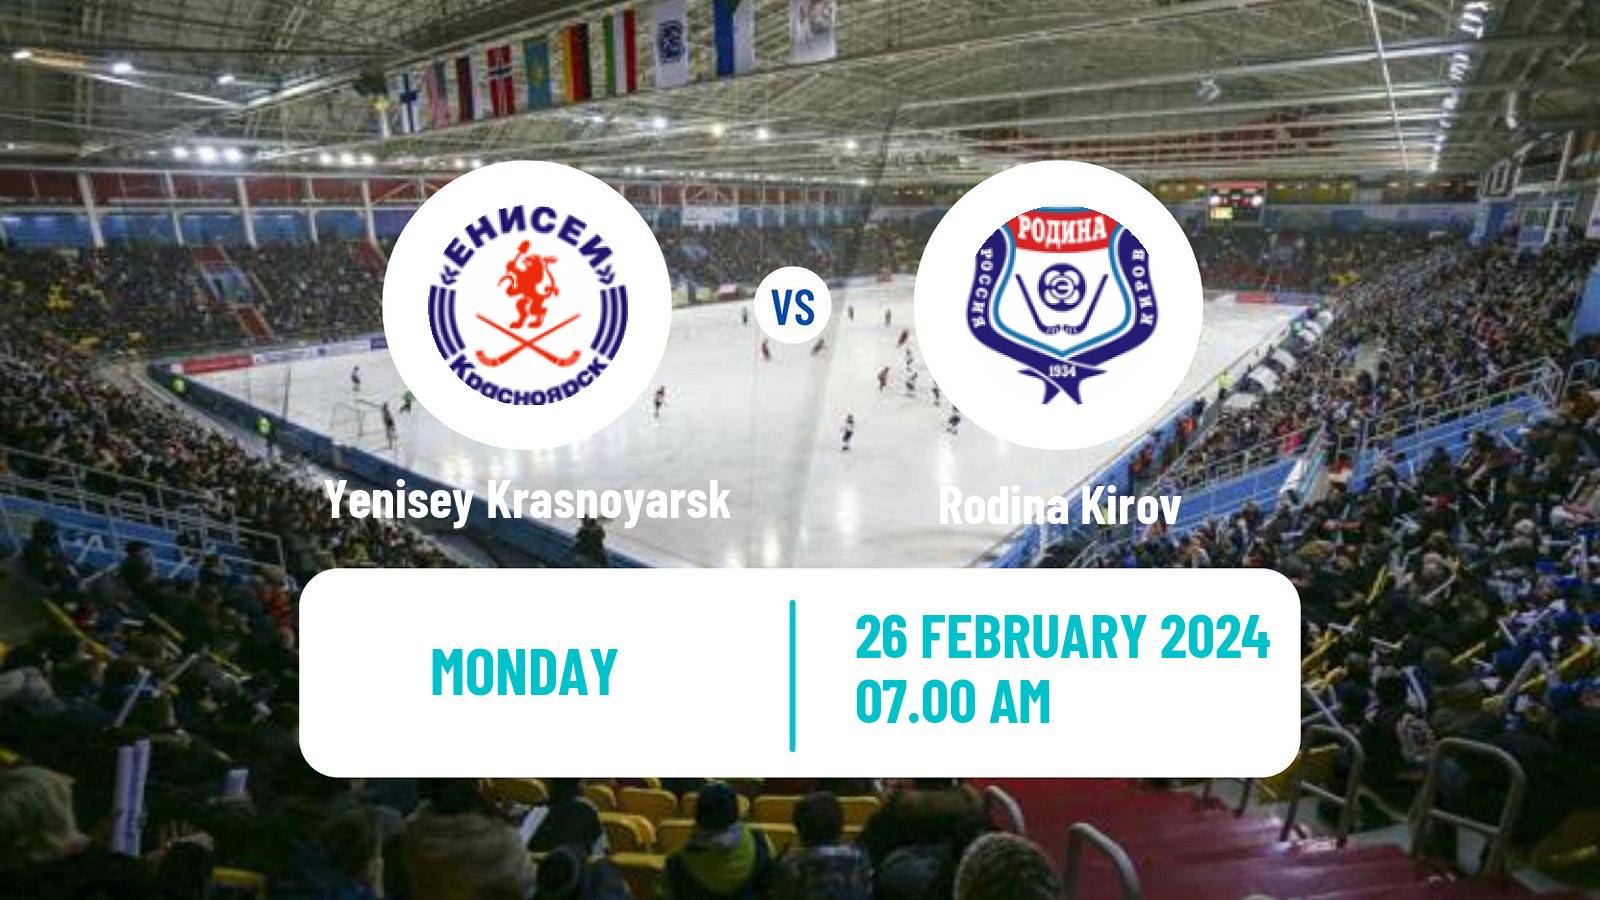 Bandy Russian Super League Bandy Yenisey Krasnoyarsk - Rodina